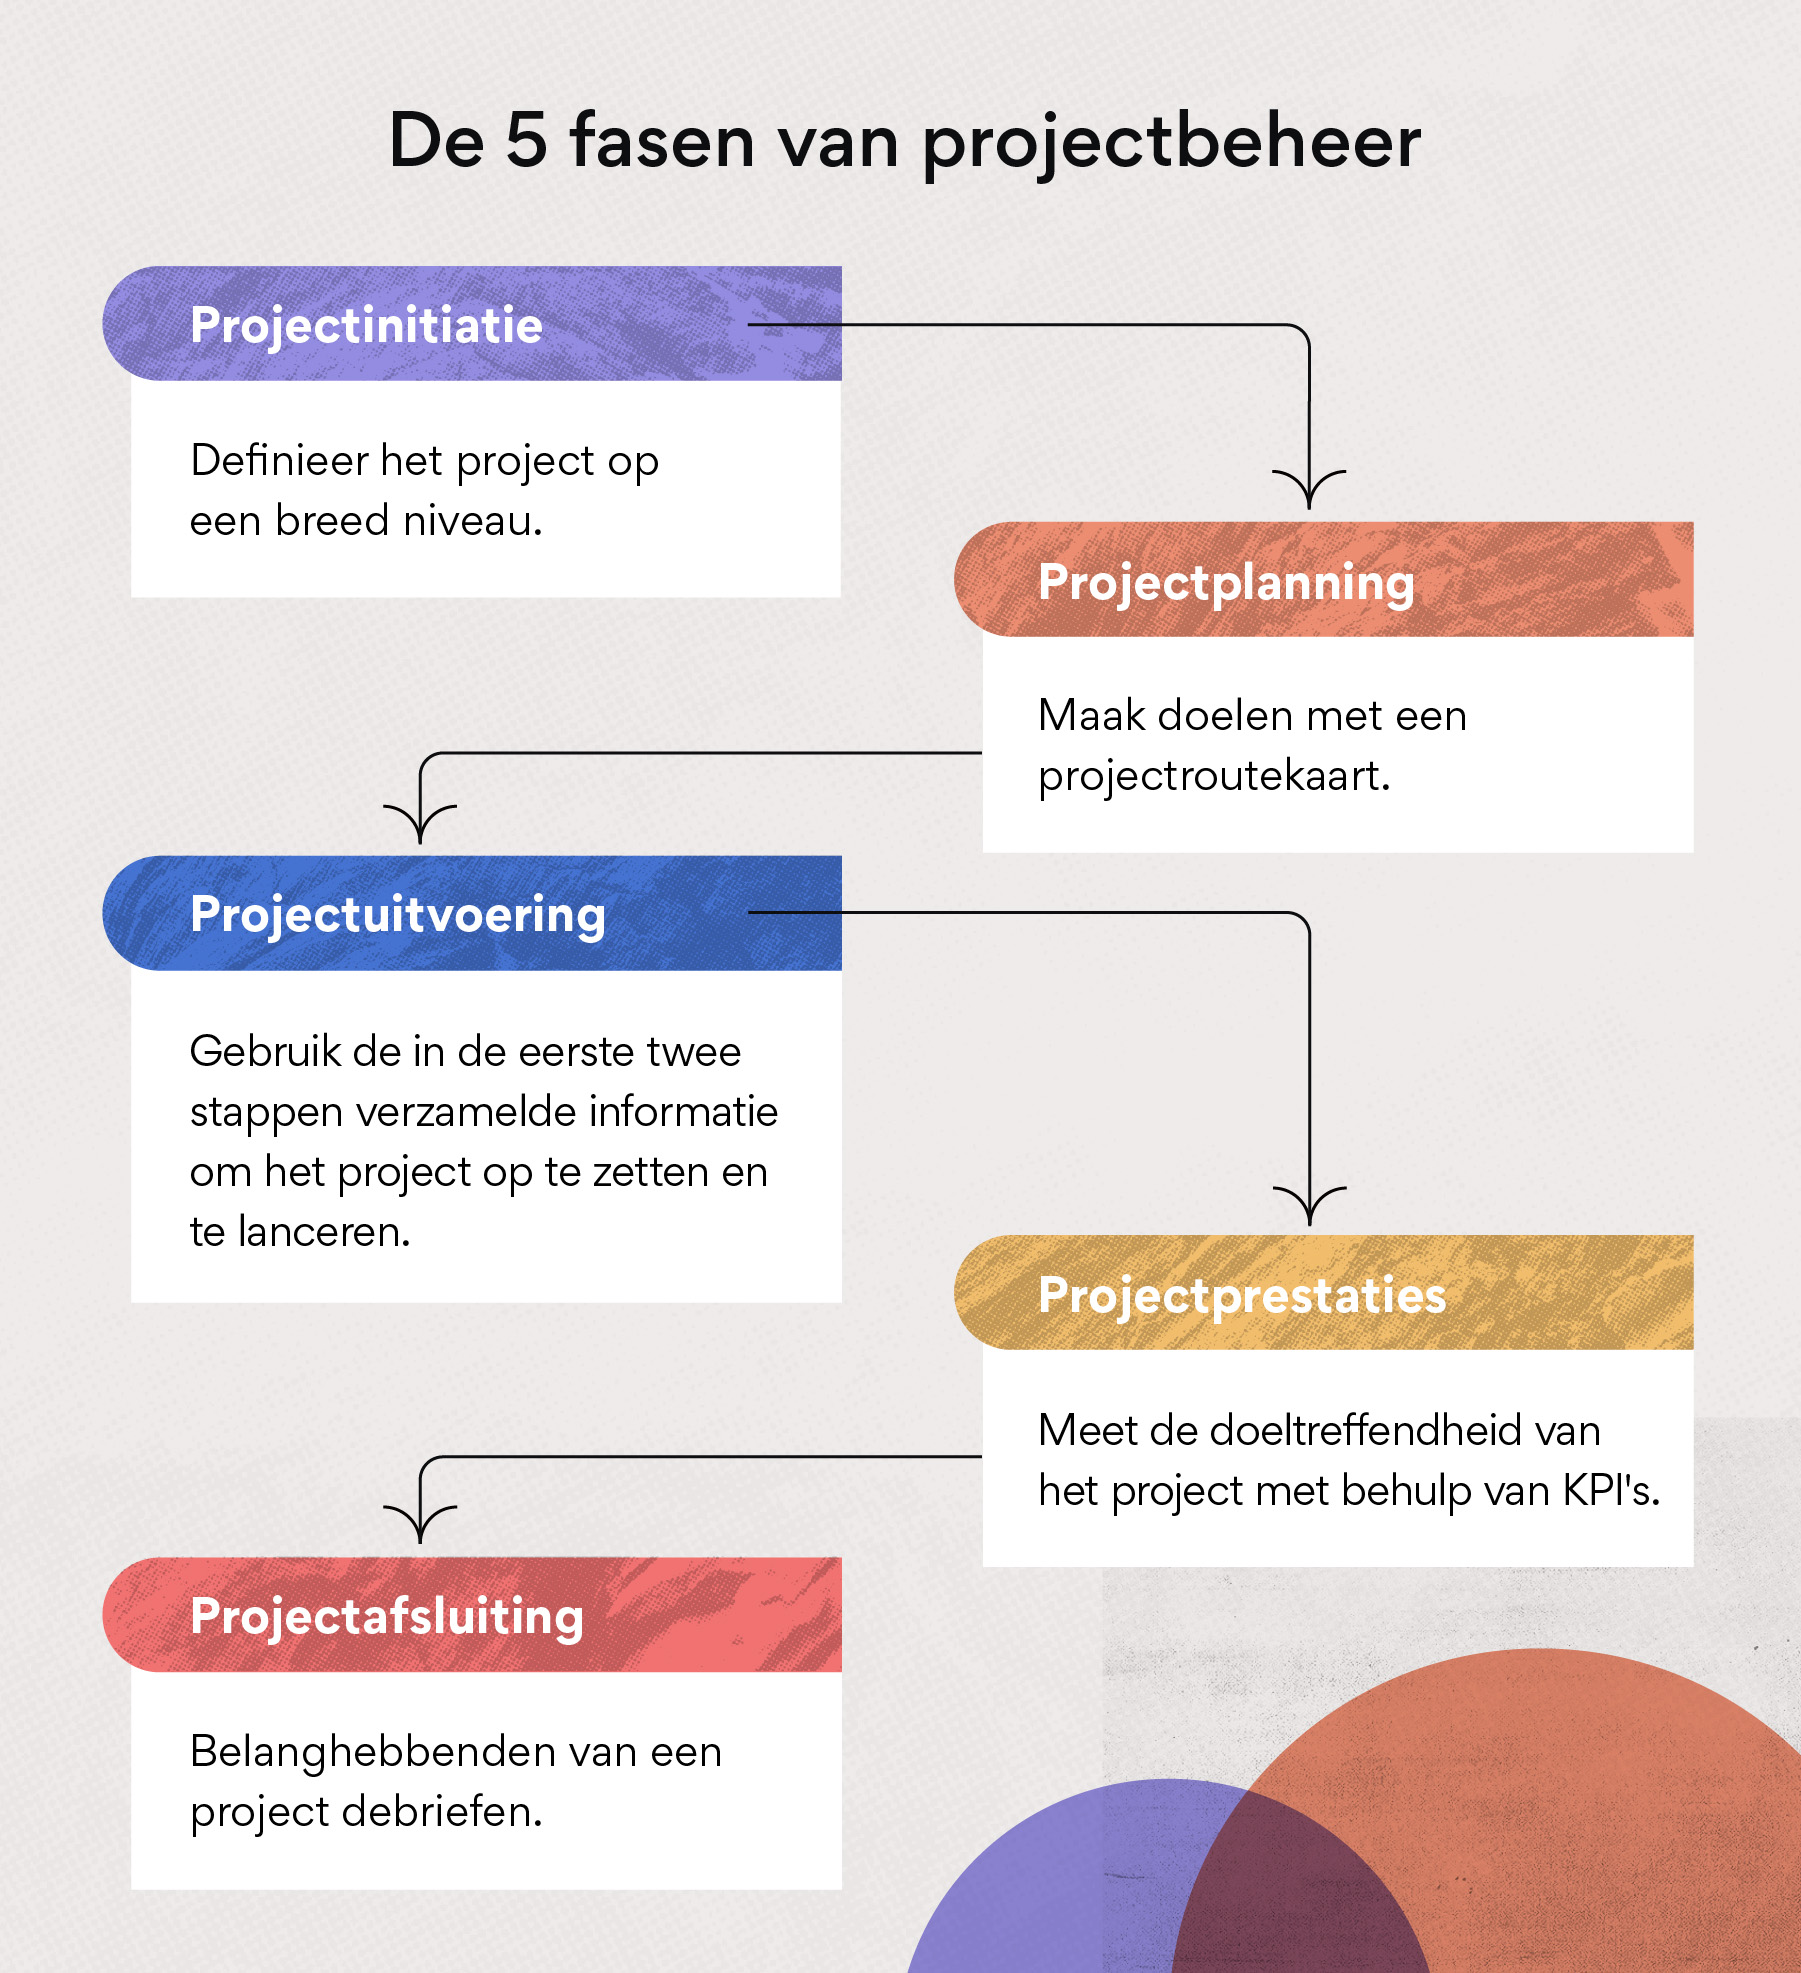 De 5 fasen van projectbeheer